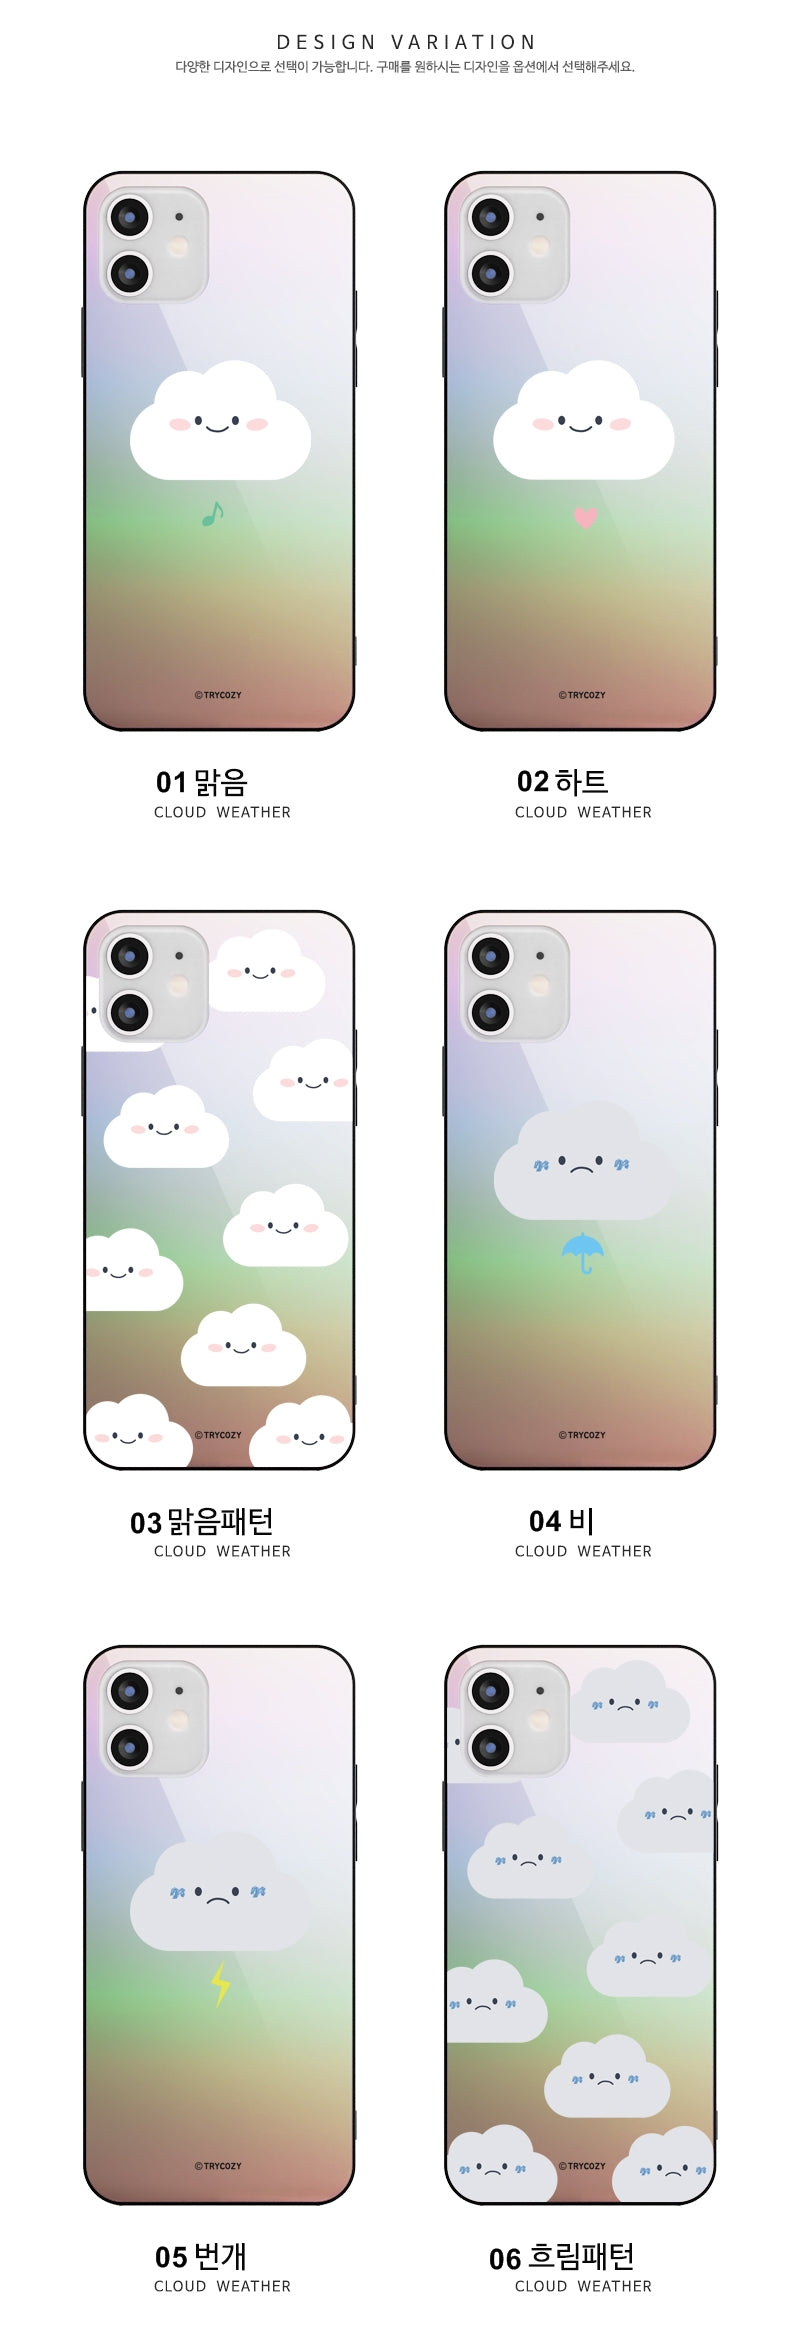 韓國直送 | M39 雲仔 - 炫彩鏡面手機殼 iPhone / Samsung Galaxy